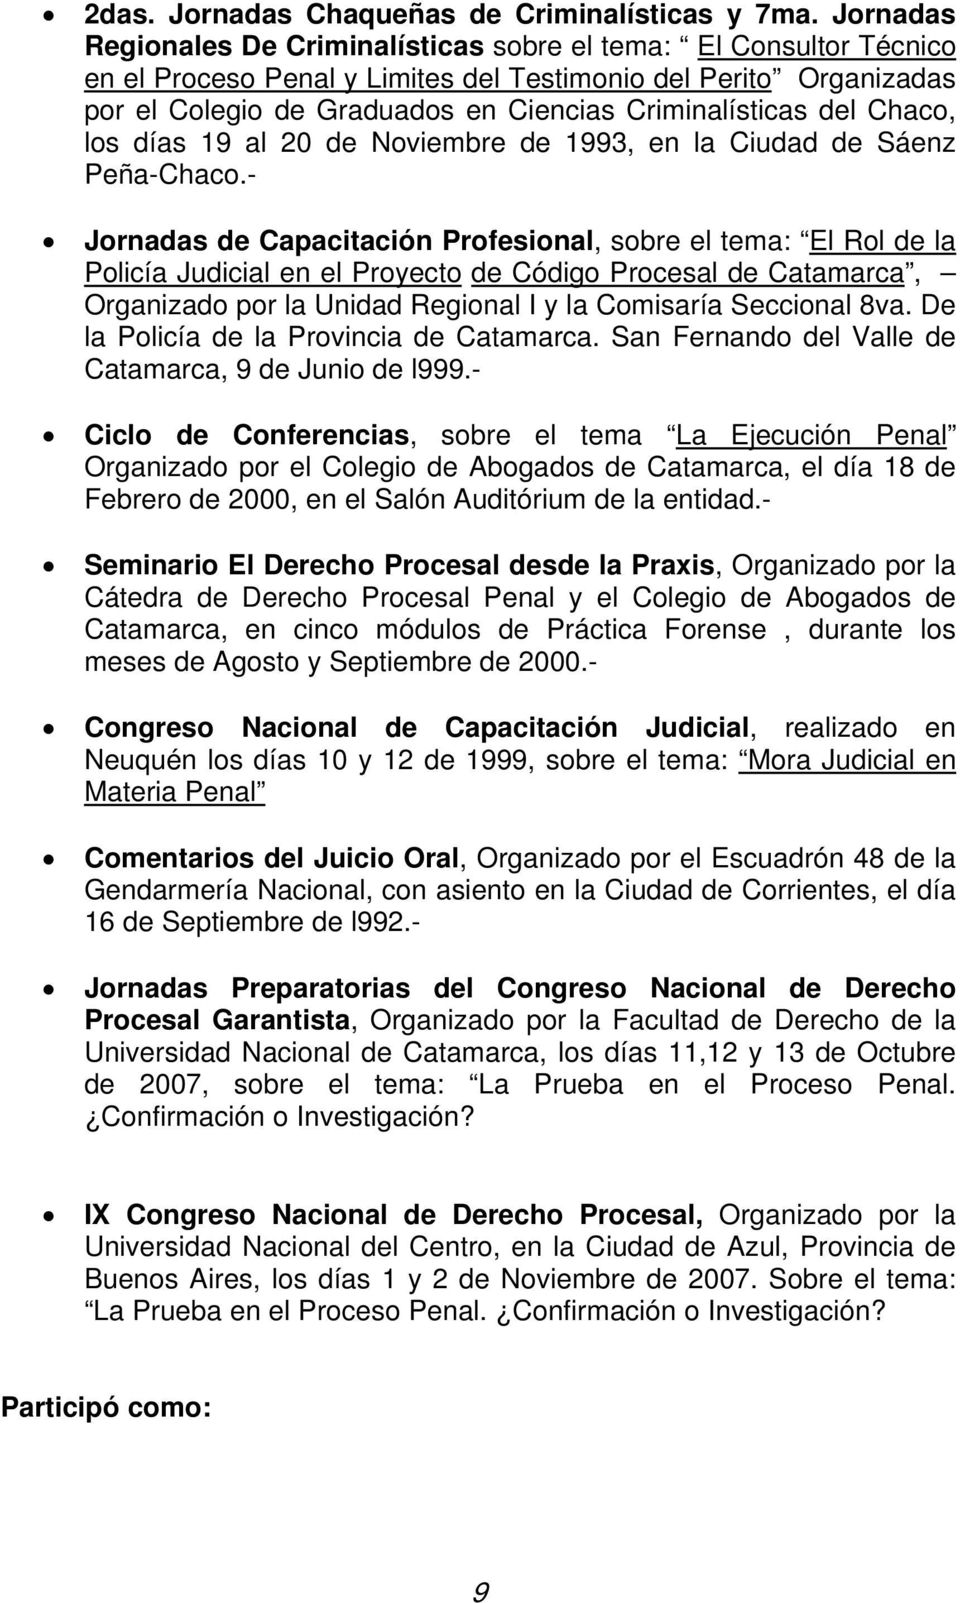 del Chaco, los días 19 al 20 de Noviembre de 1993, en la Ciudad de Sáenz Peña-Chaco.